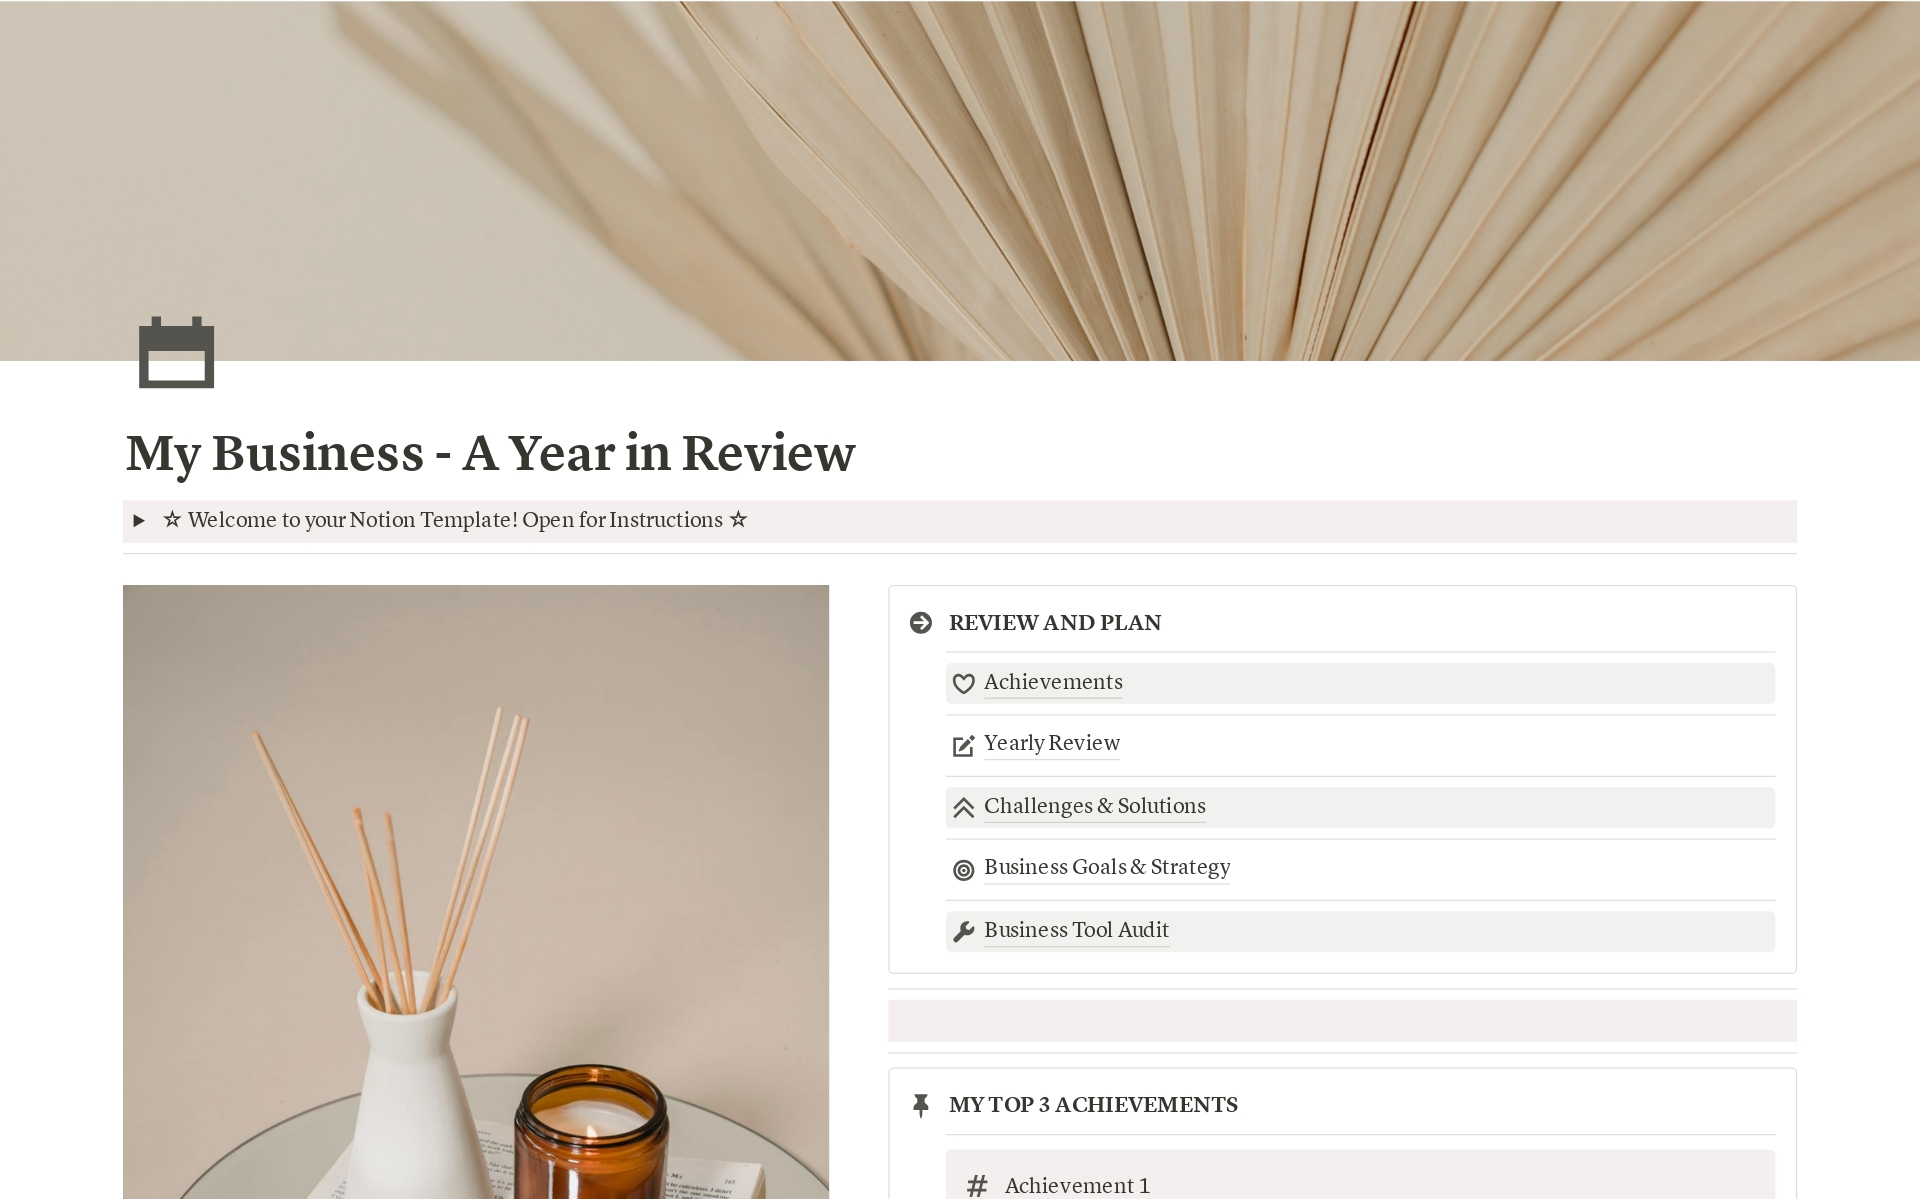 Vista previa de una plantilla para My Business - A Year in Review